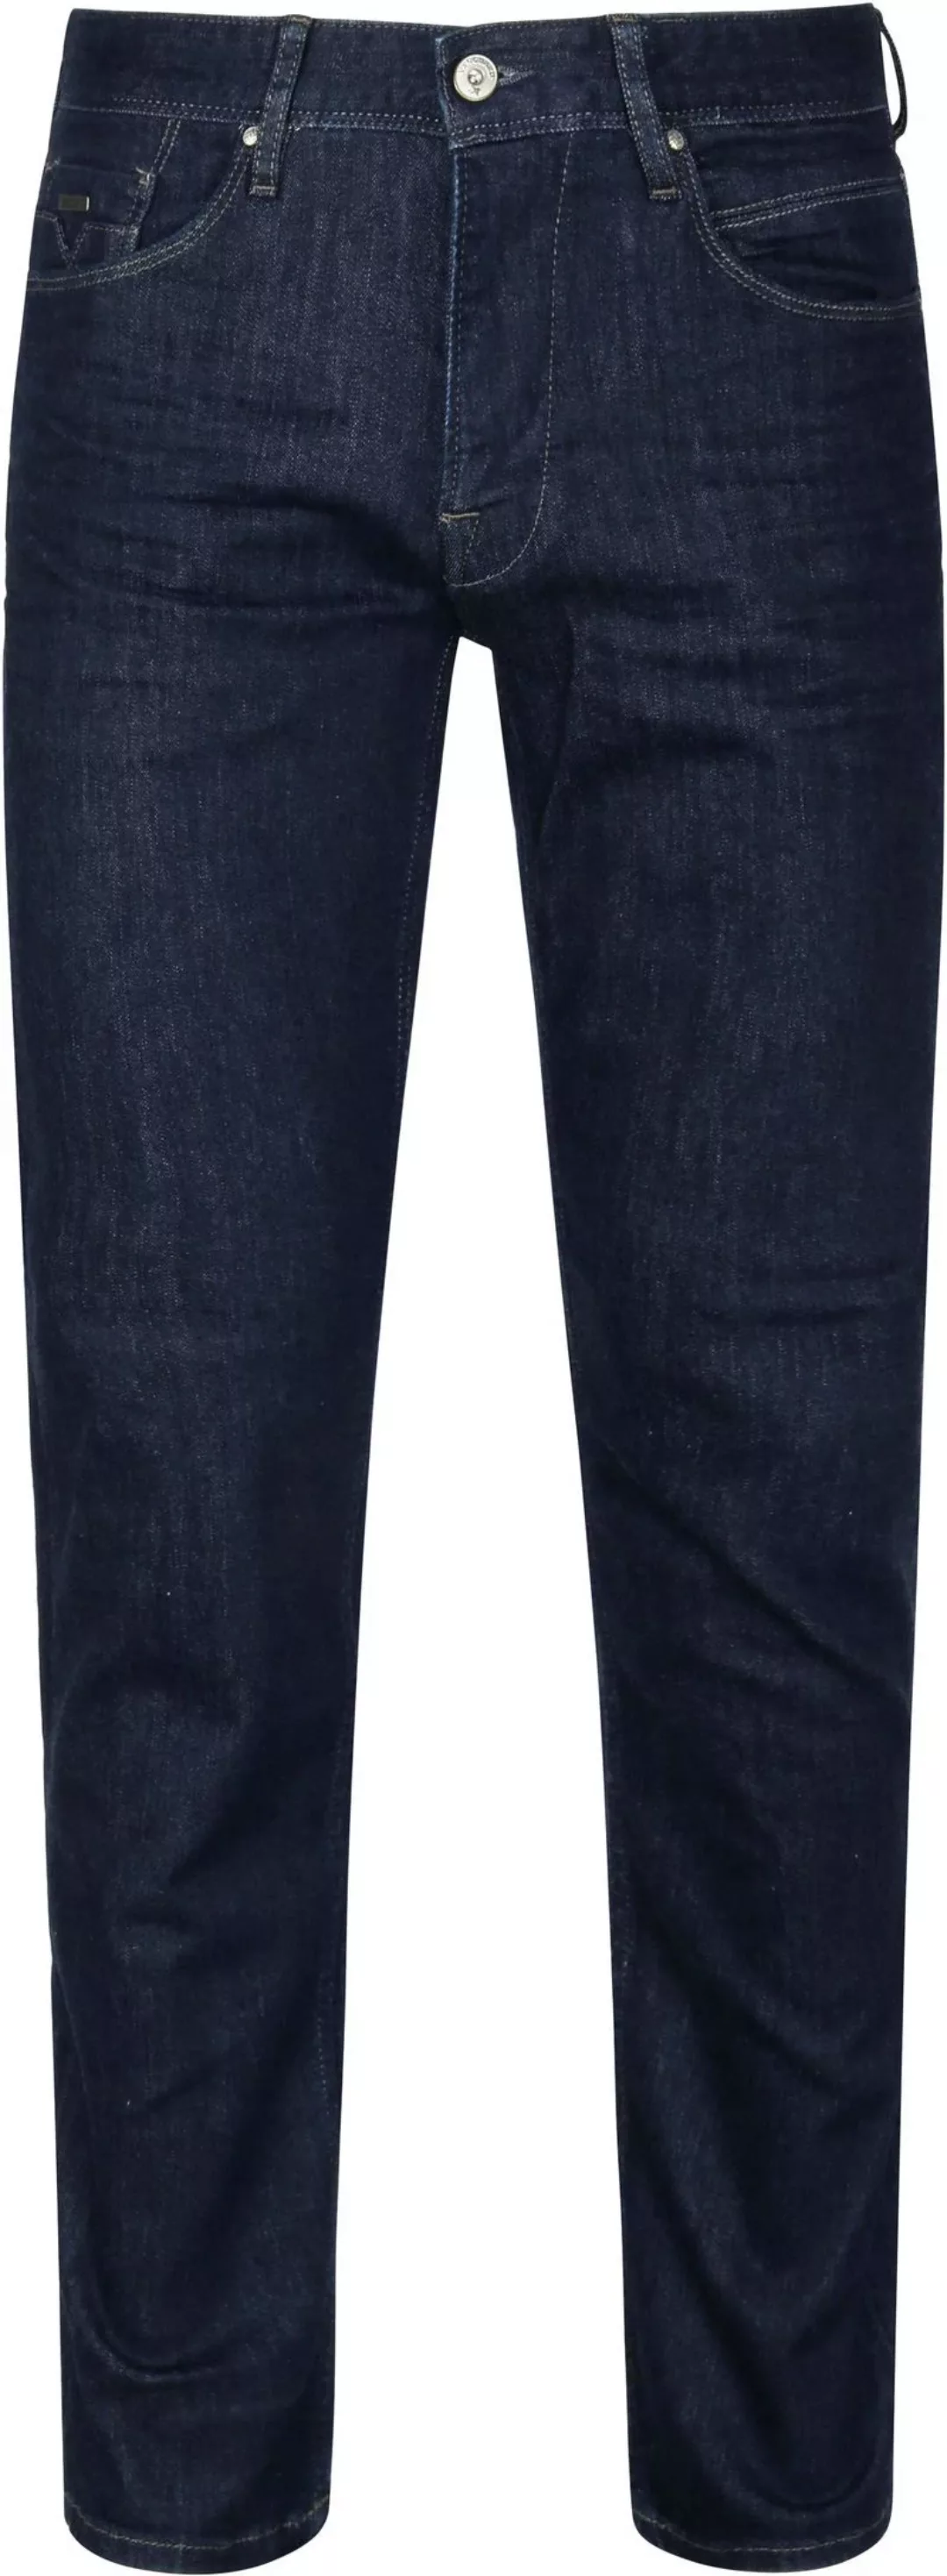 Vanguard Jeans V7 Rider Dunkelblau - Größe W 32 - L 36 günstig online kaufen